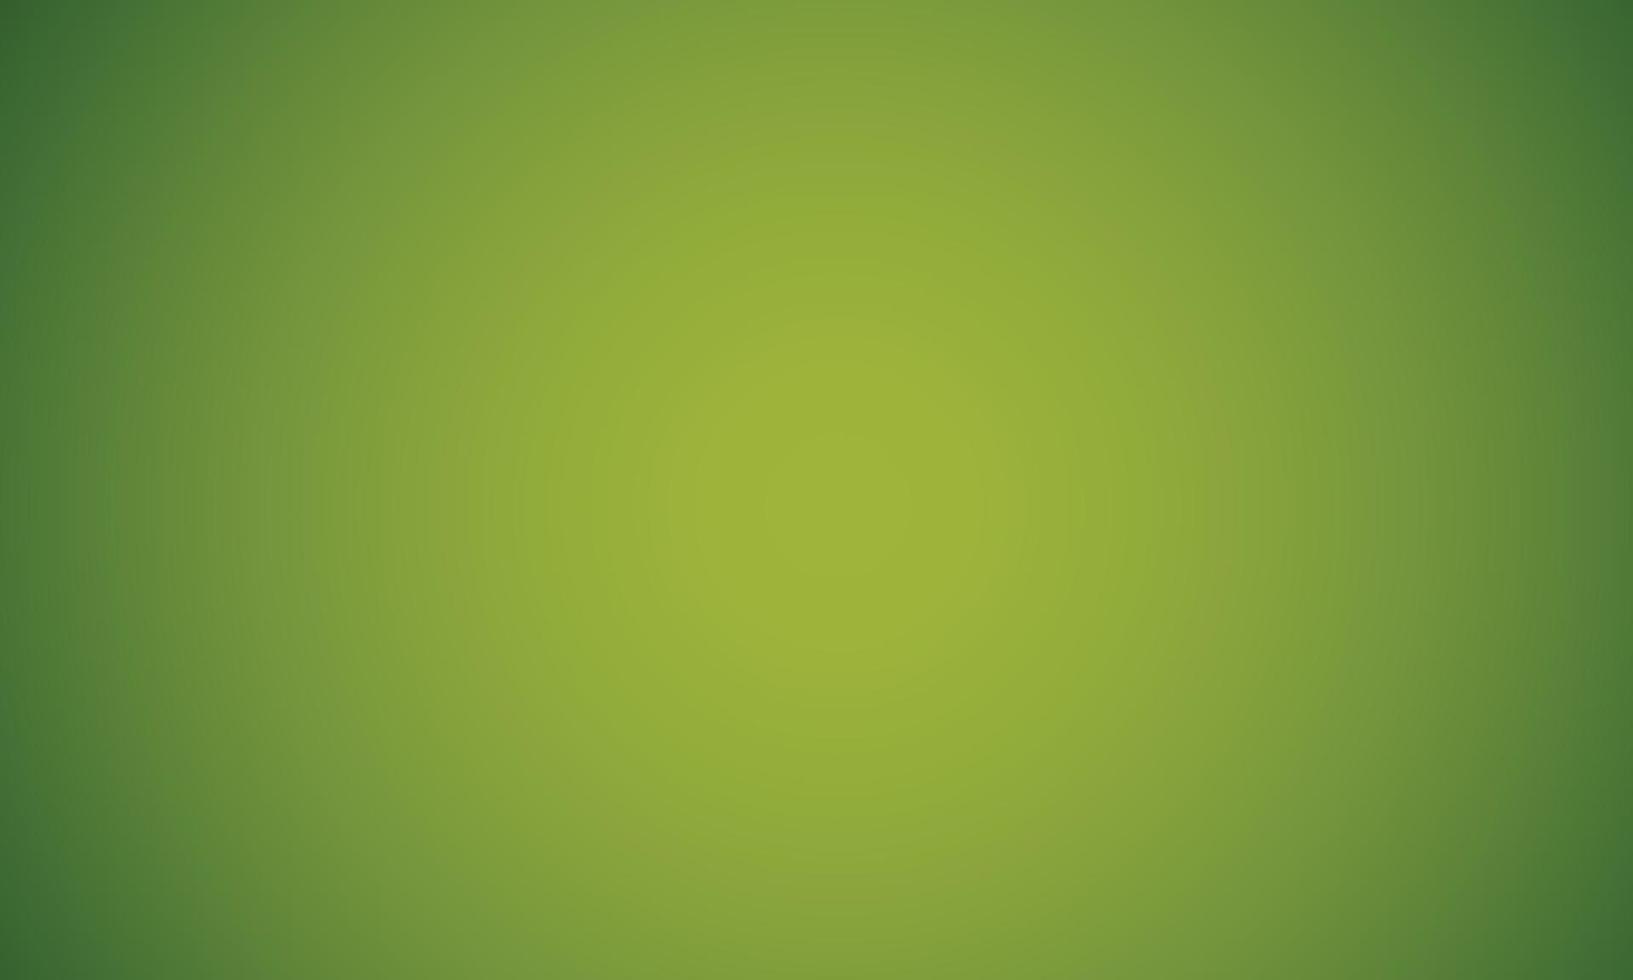 sfondo di colore sfumato verde scuro giallo chiaro astratto. illustrazione vettoriale eps10